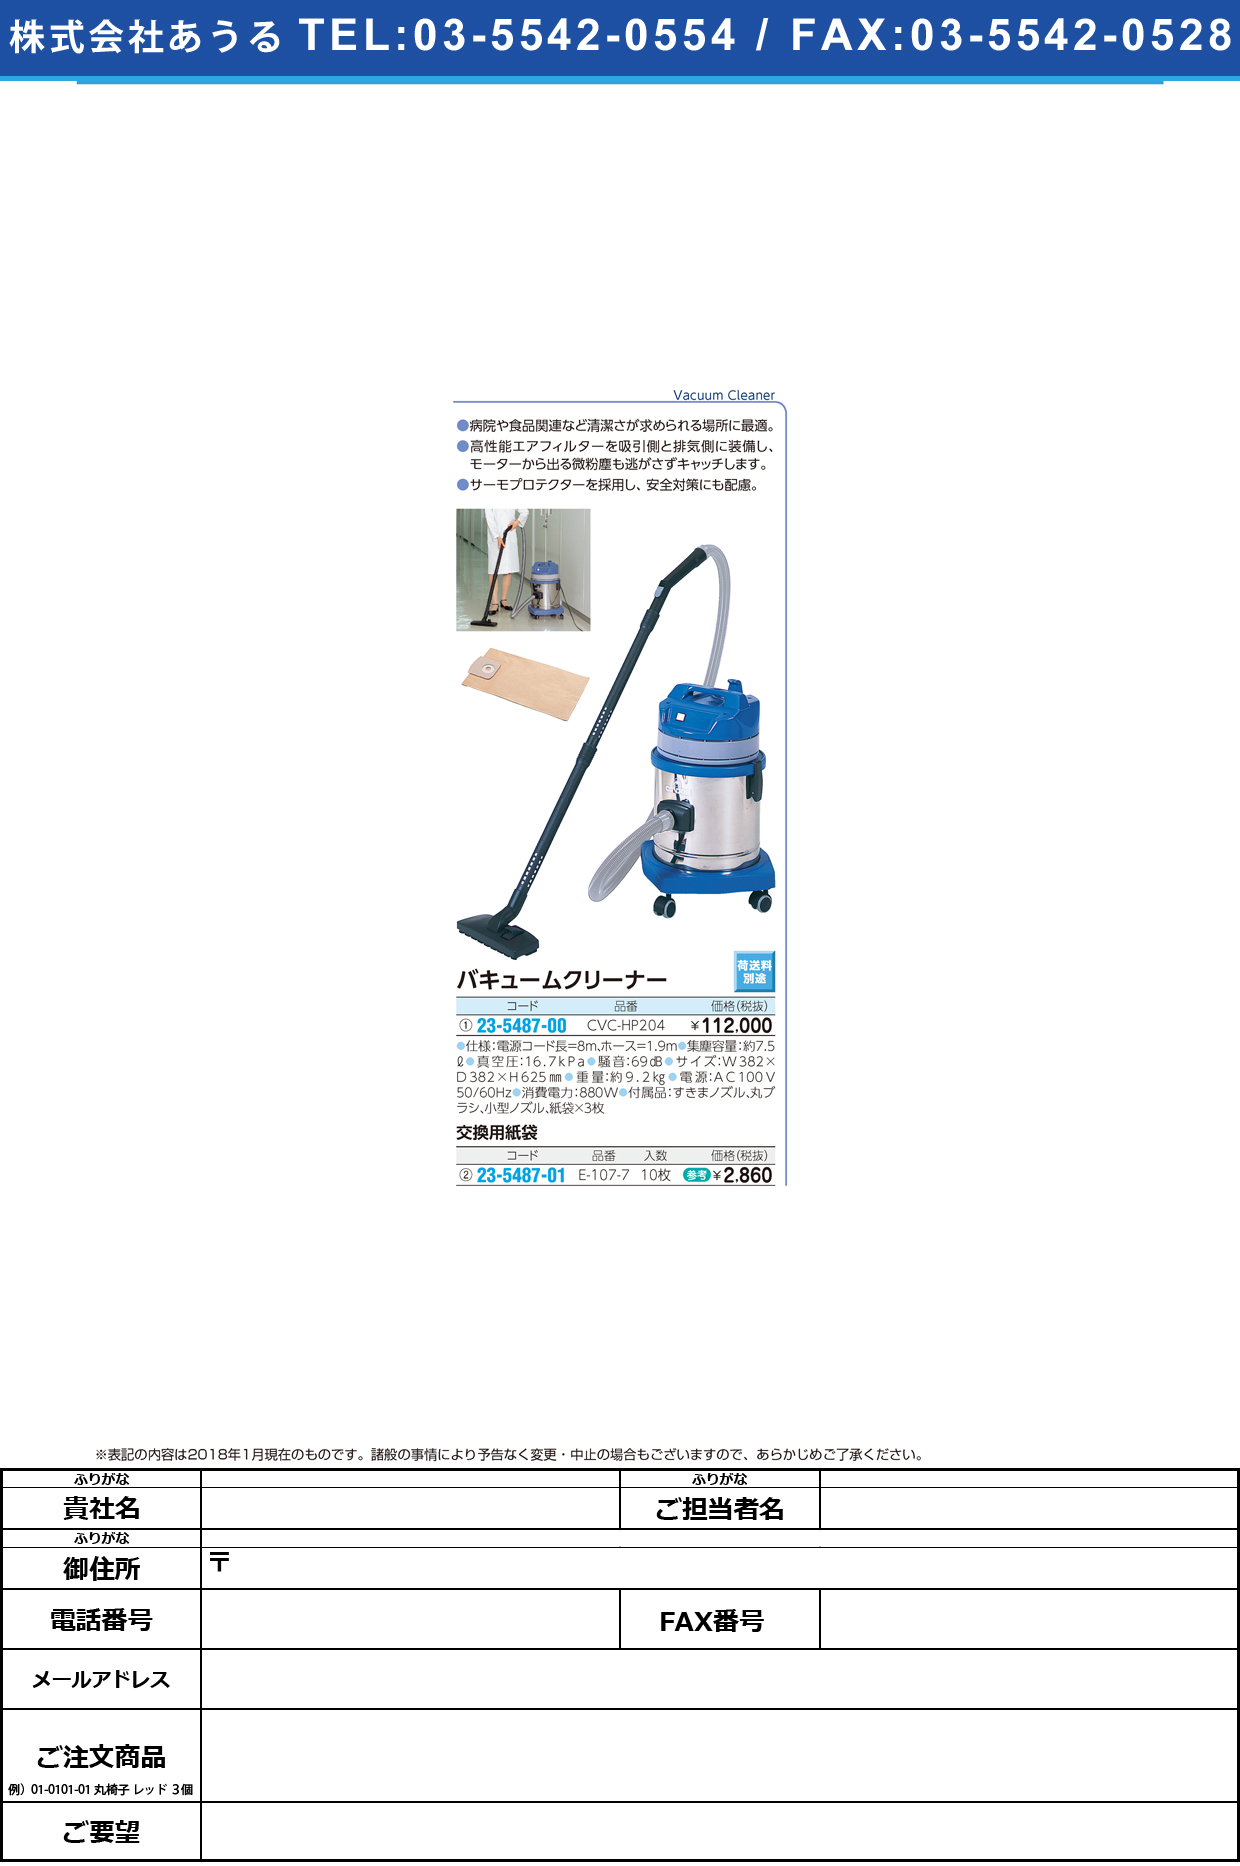 (23-5487-00)バキュームクリーナー CVC-HP204 ﾊﾞｷｭｰﾑｸﾘｰﾅｰ(山崎産業)【1台単位】【2018年カタログ商品】